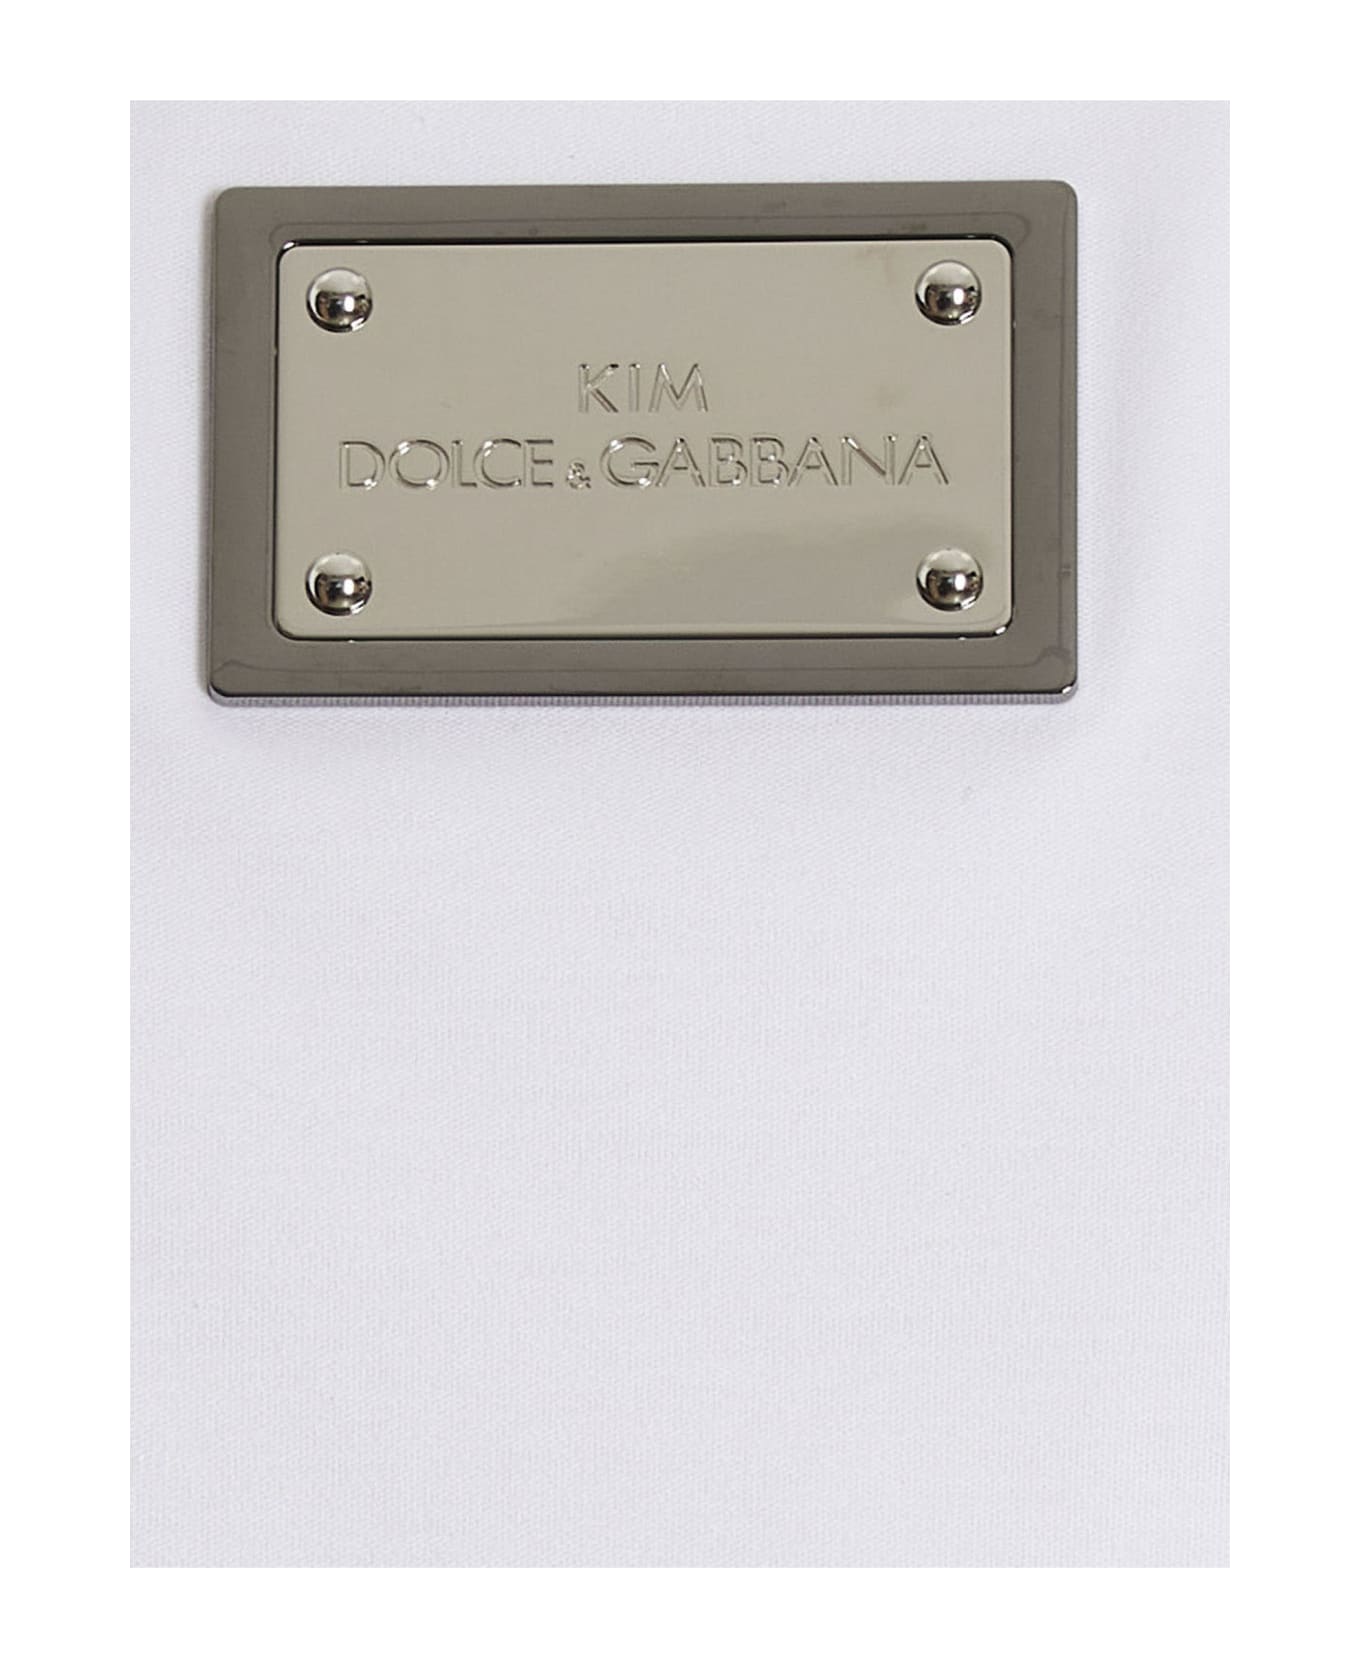 Dolce & Gabbana T-shirt 'kim Dolce&gabbana' - White